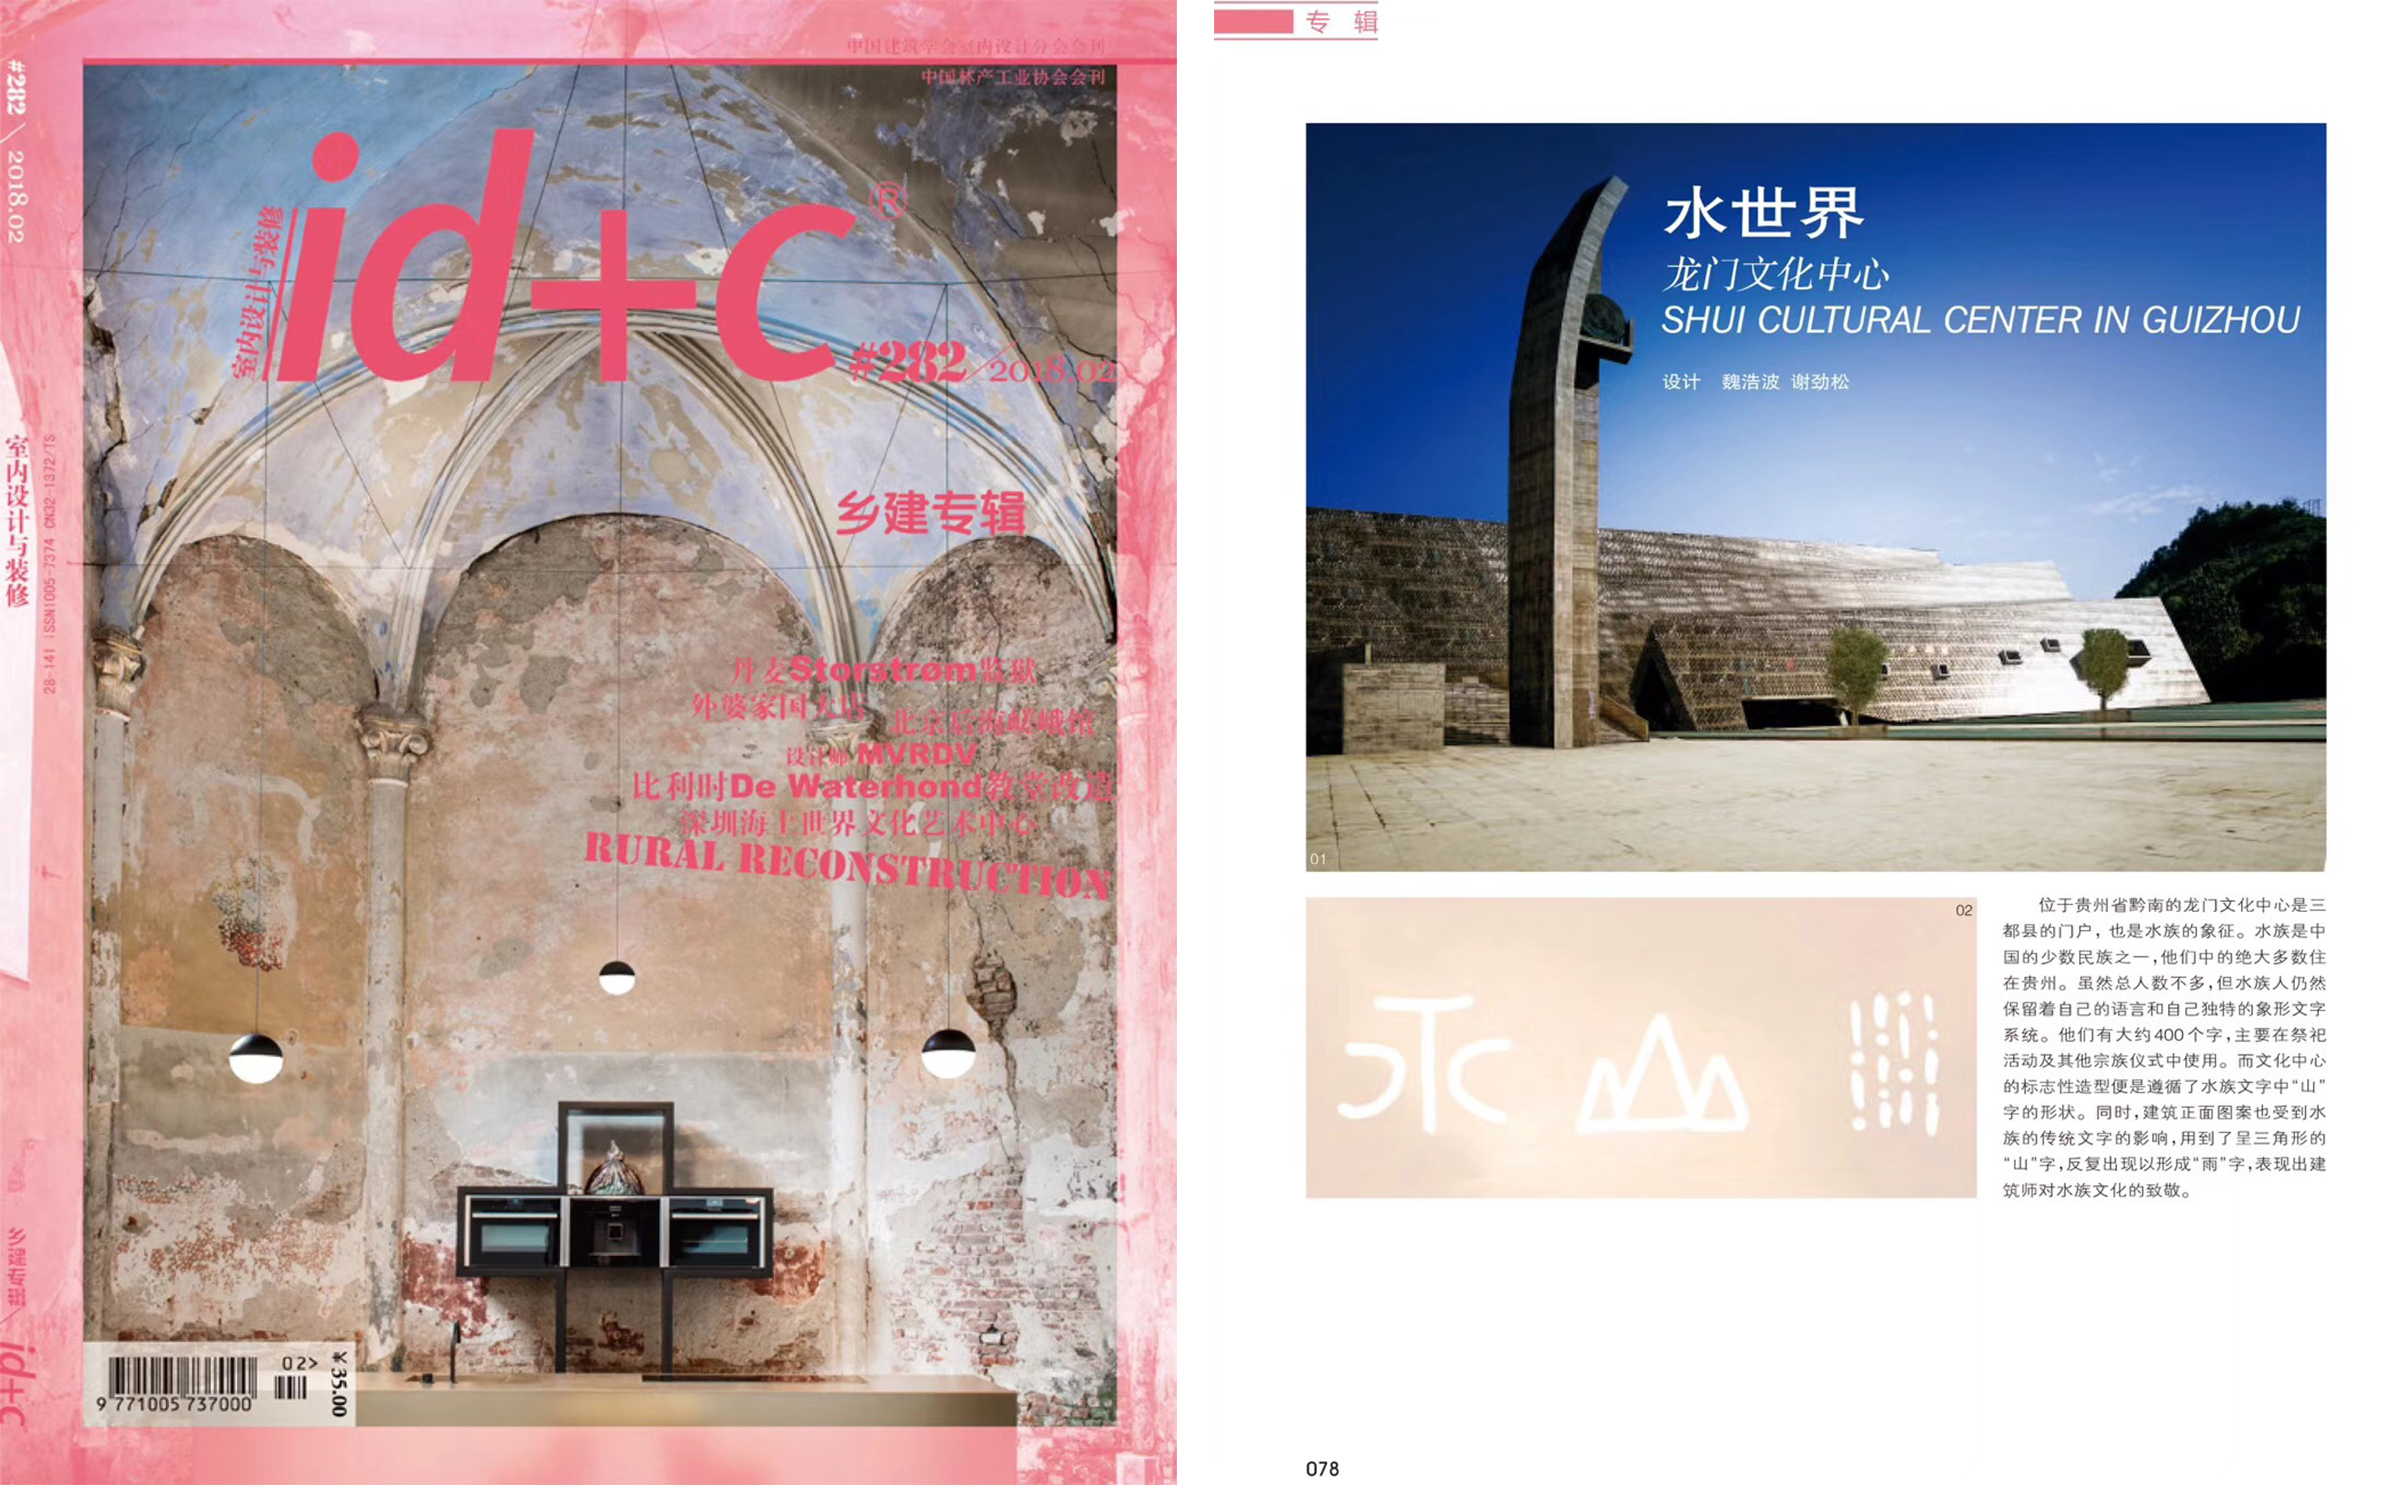 中国建筑学会室内设计分会会刊《ID+C室内设计与装修》2月刊登载西线工作室作品“龙门文化中心”